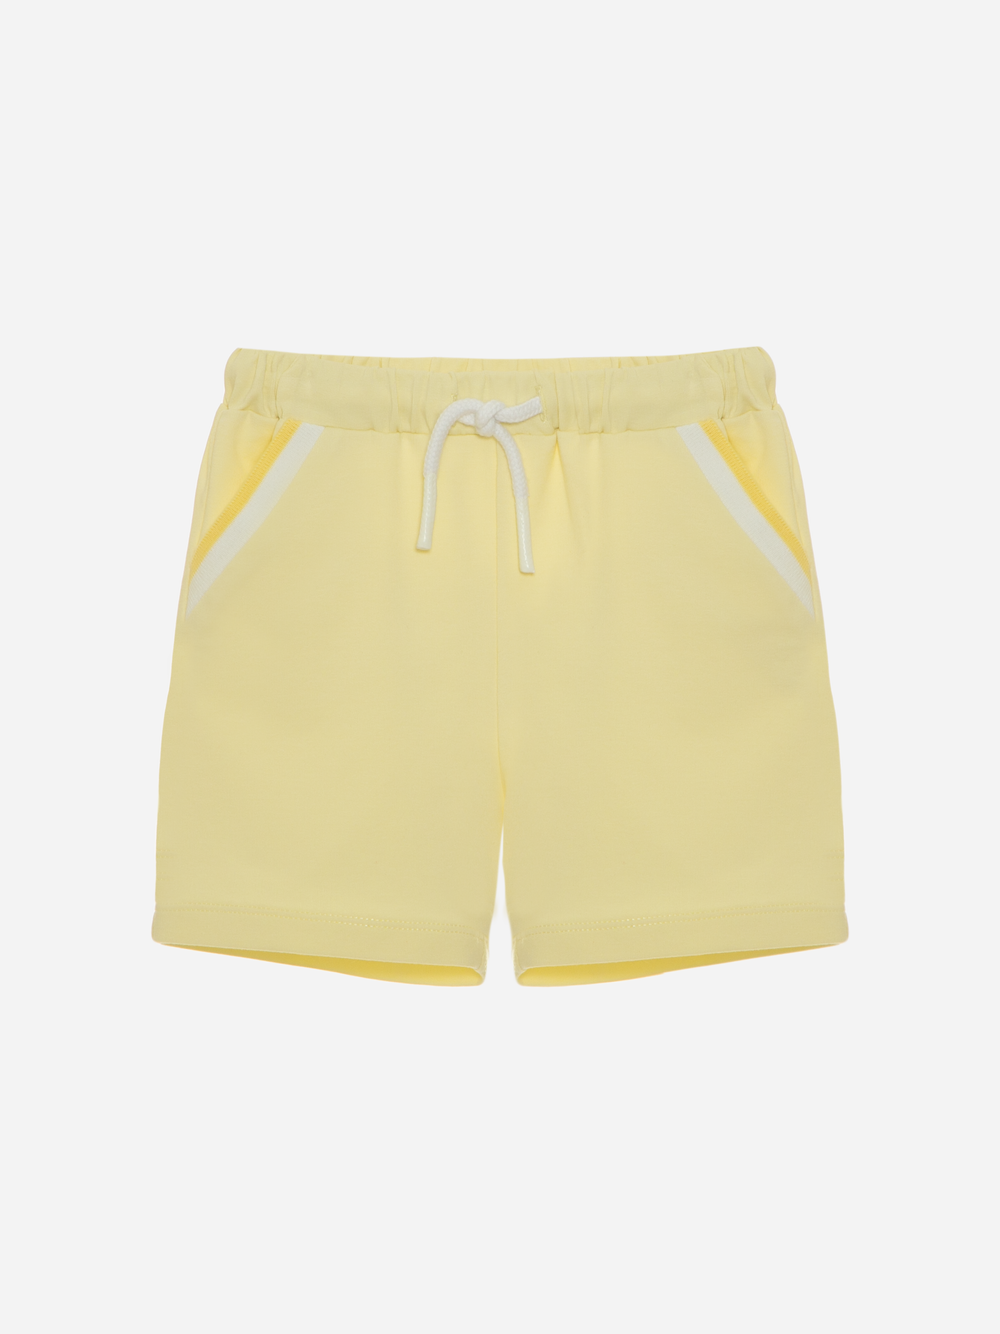 Yellow cotton fleece shorts